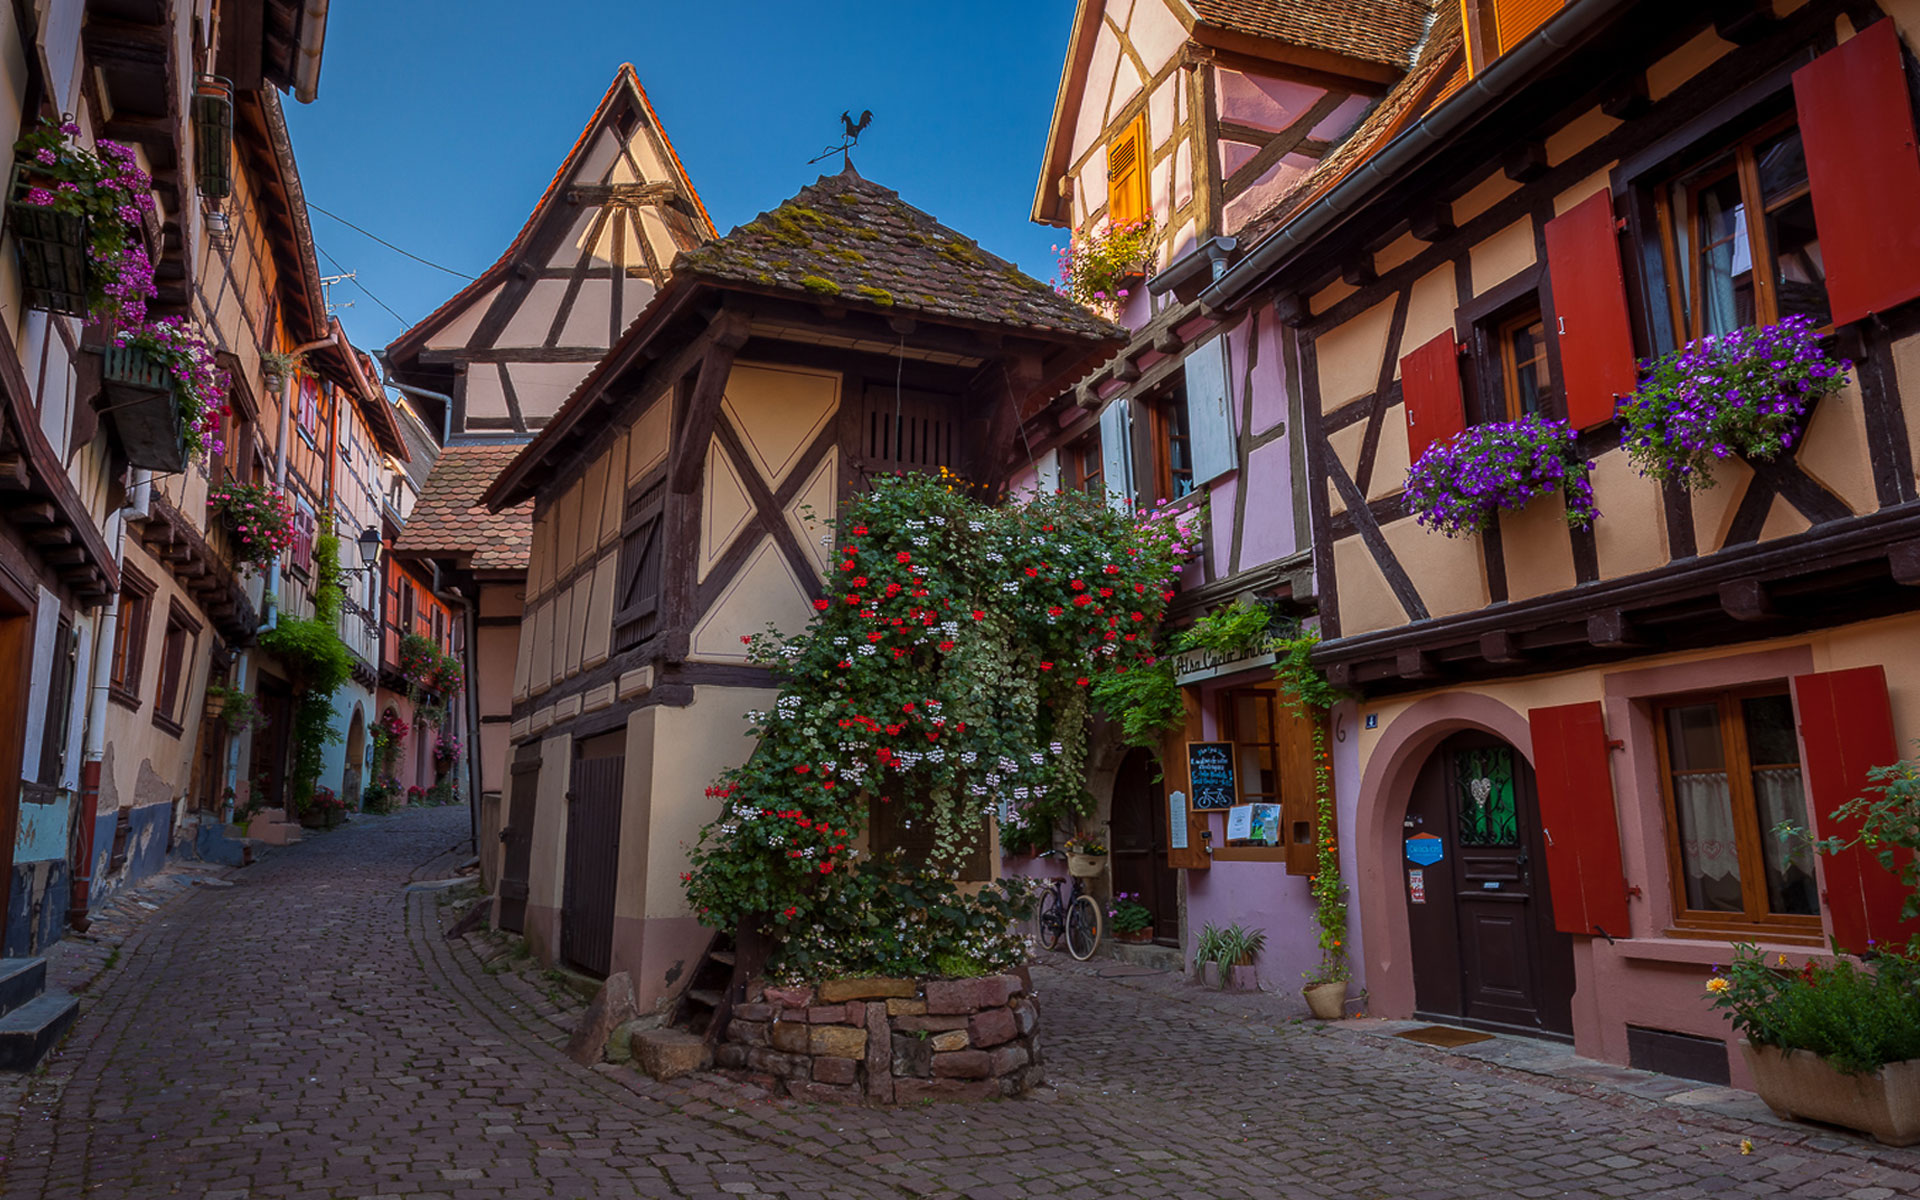 Les plus beaux villages de France : Eguisheim (Alsace) village fortifiée depuis 1257